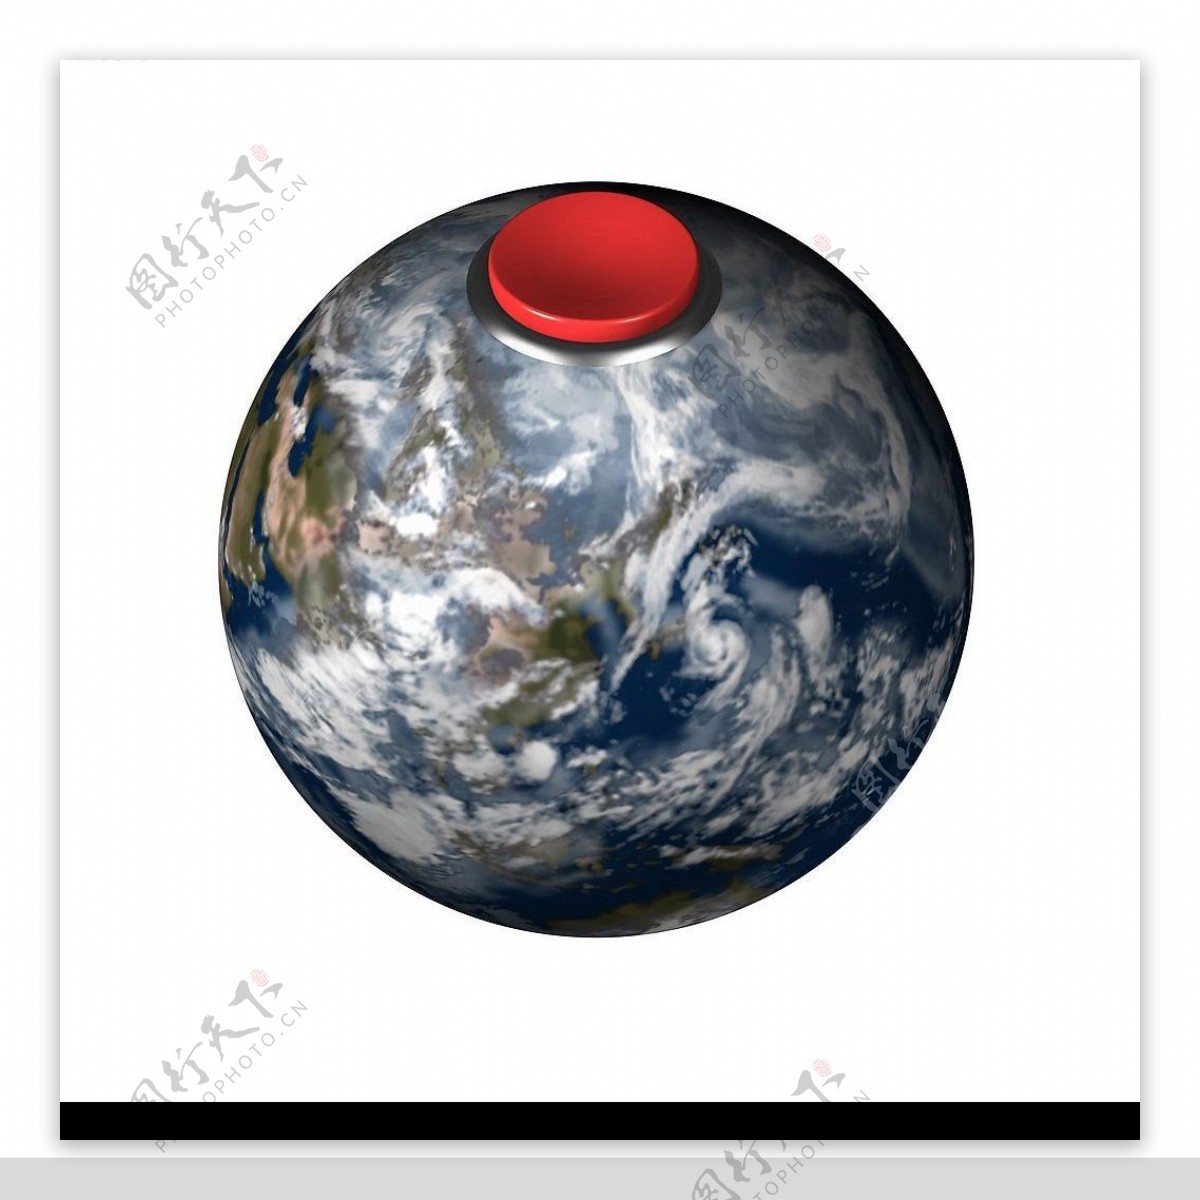 地球仪图片